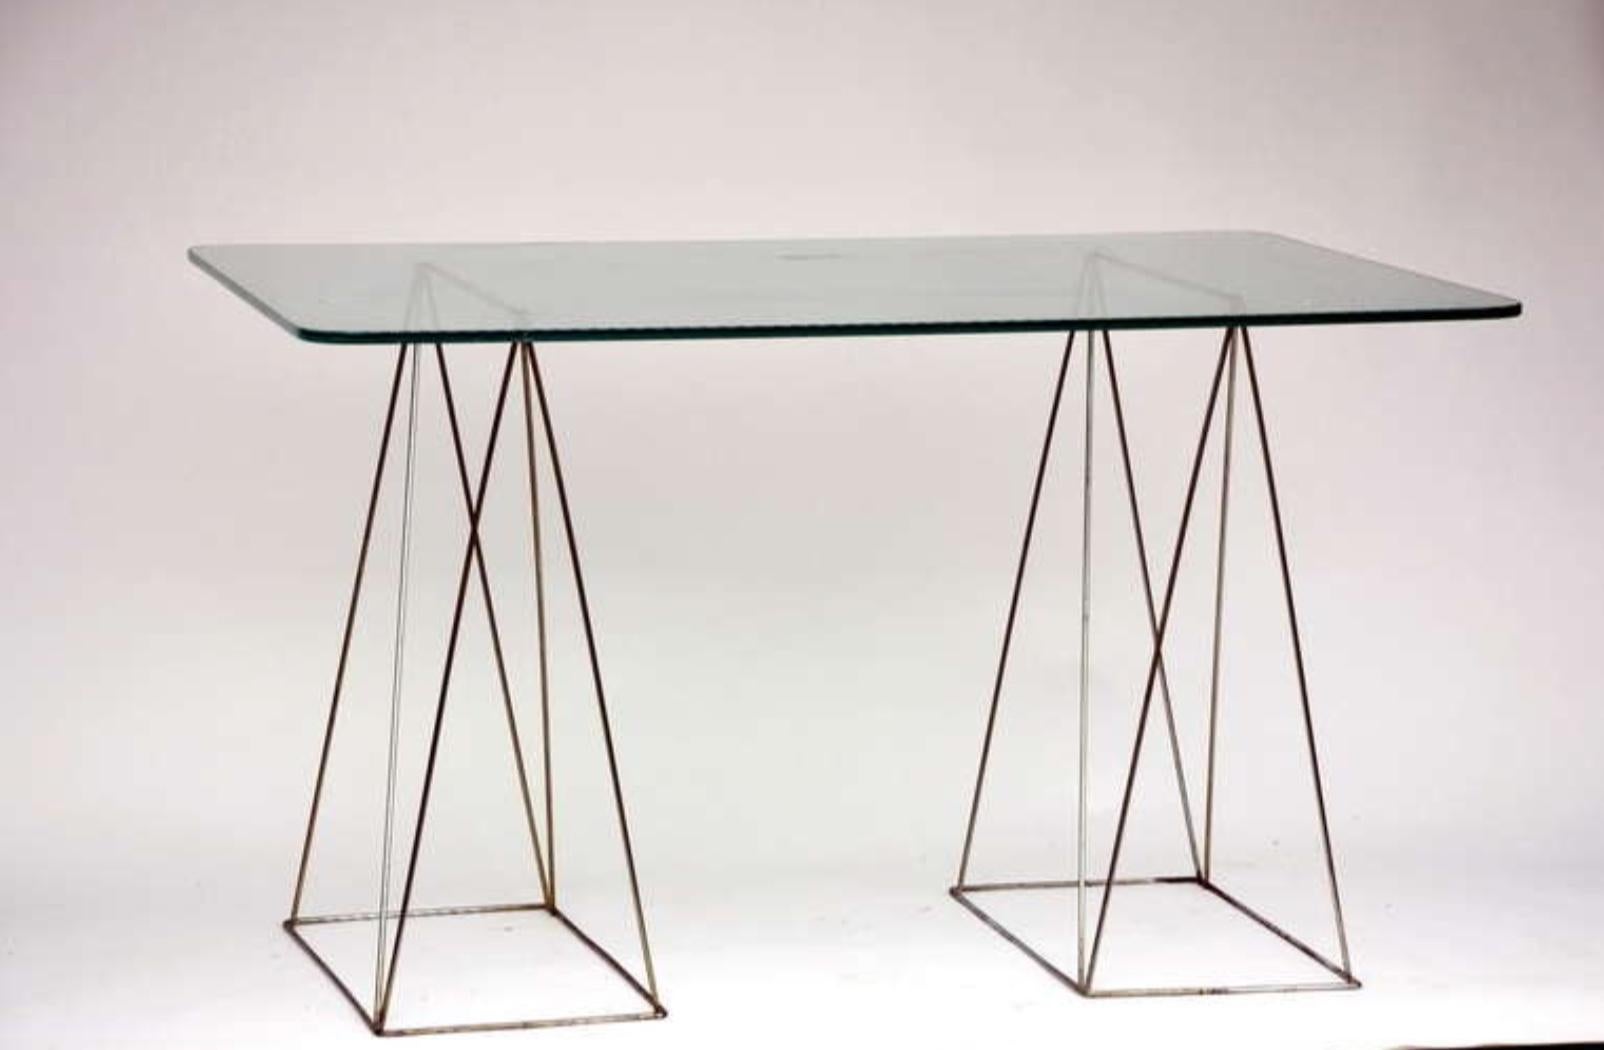 Minimalist steel and glass trestle table.